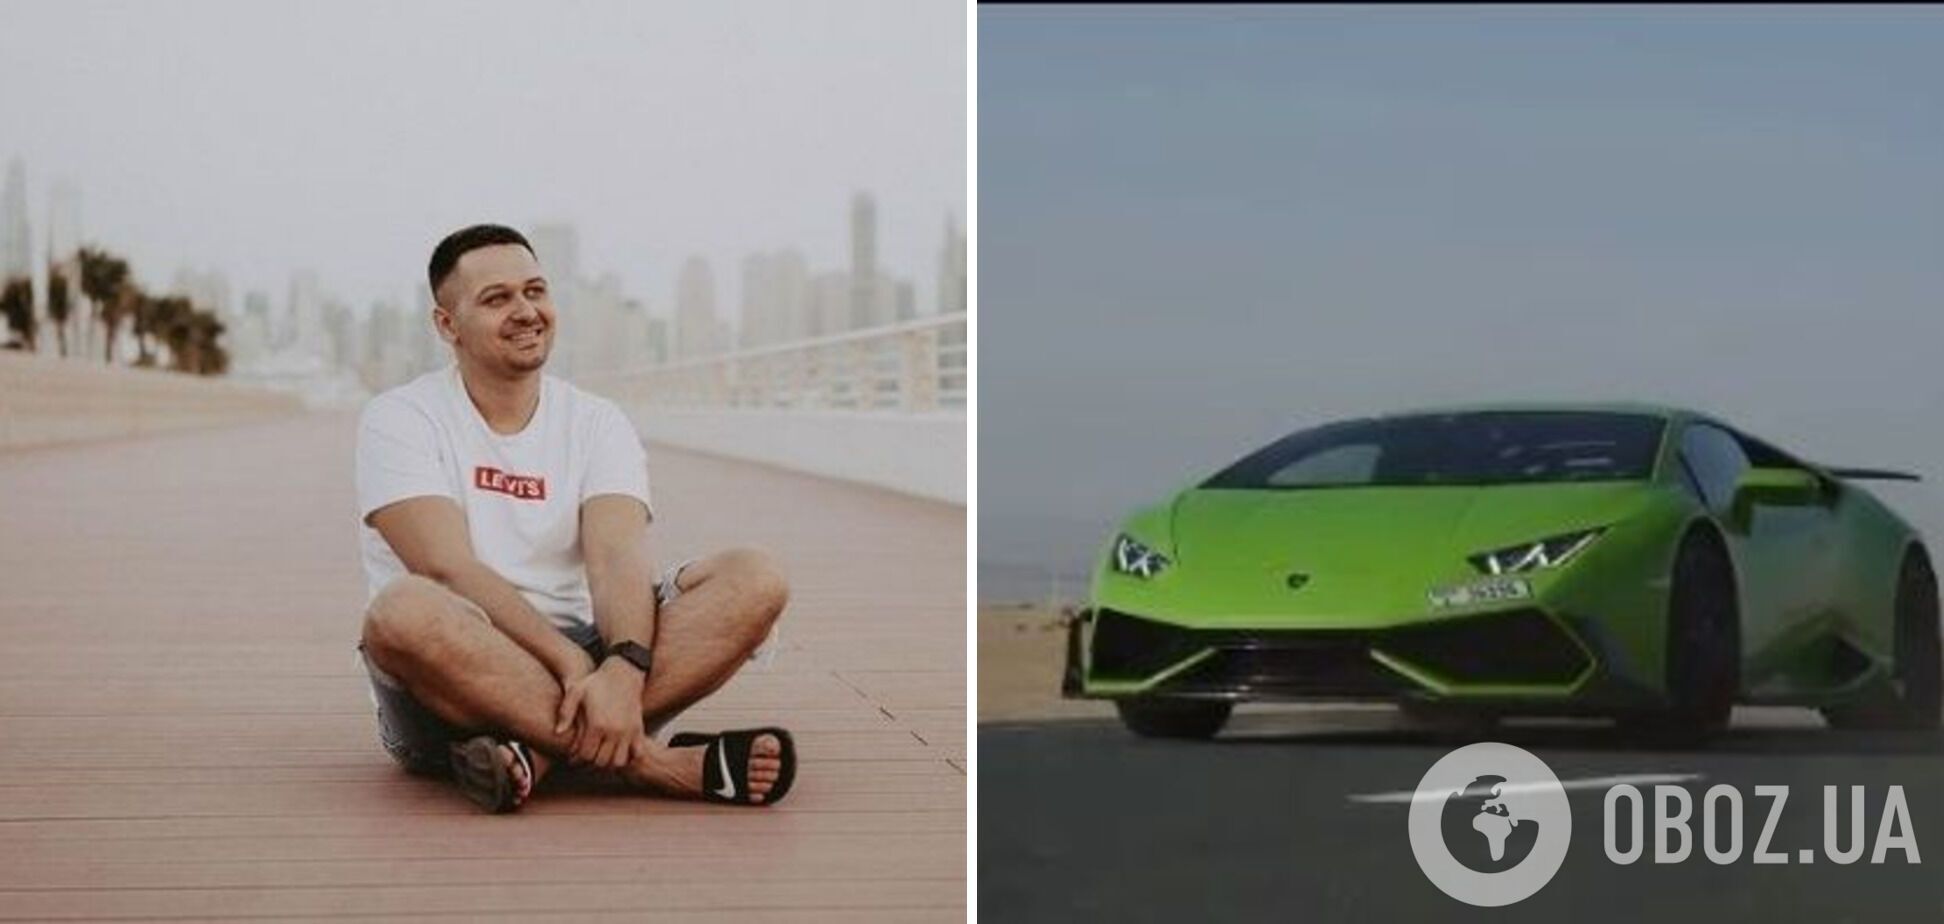 Олександр Мицкан орендував Lamborghini і застряг у Дубаї.